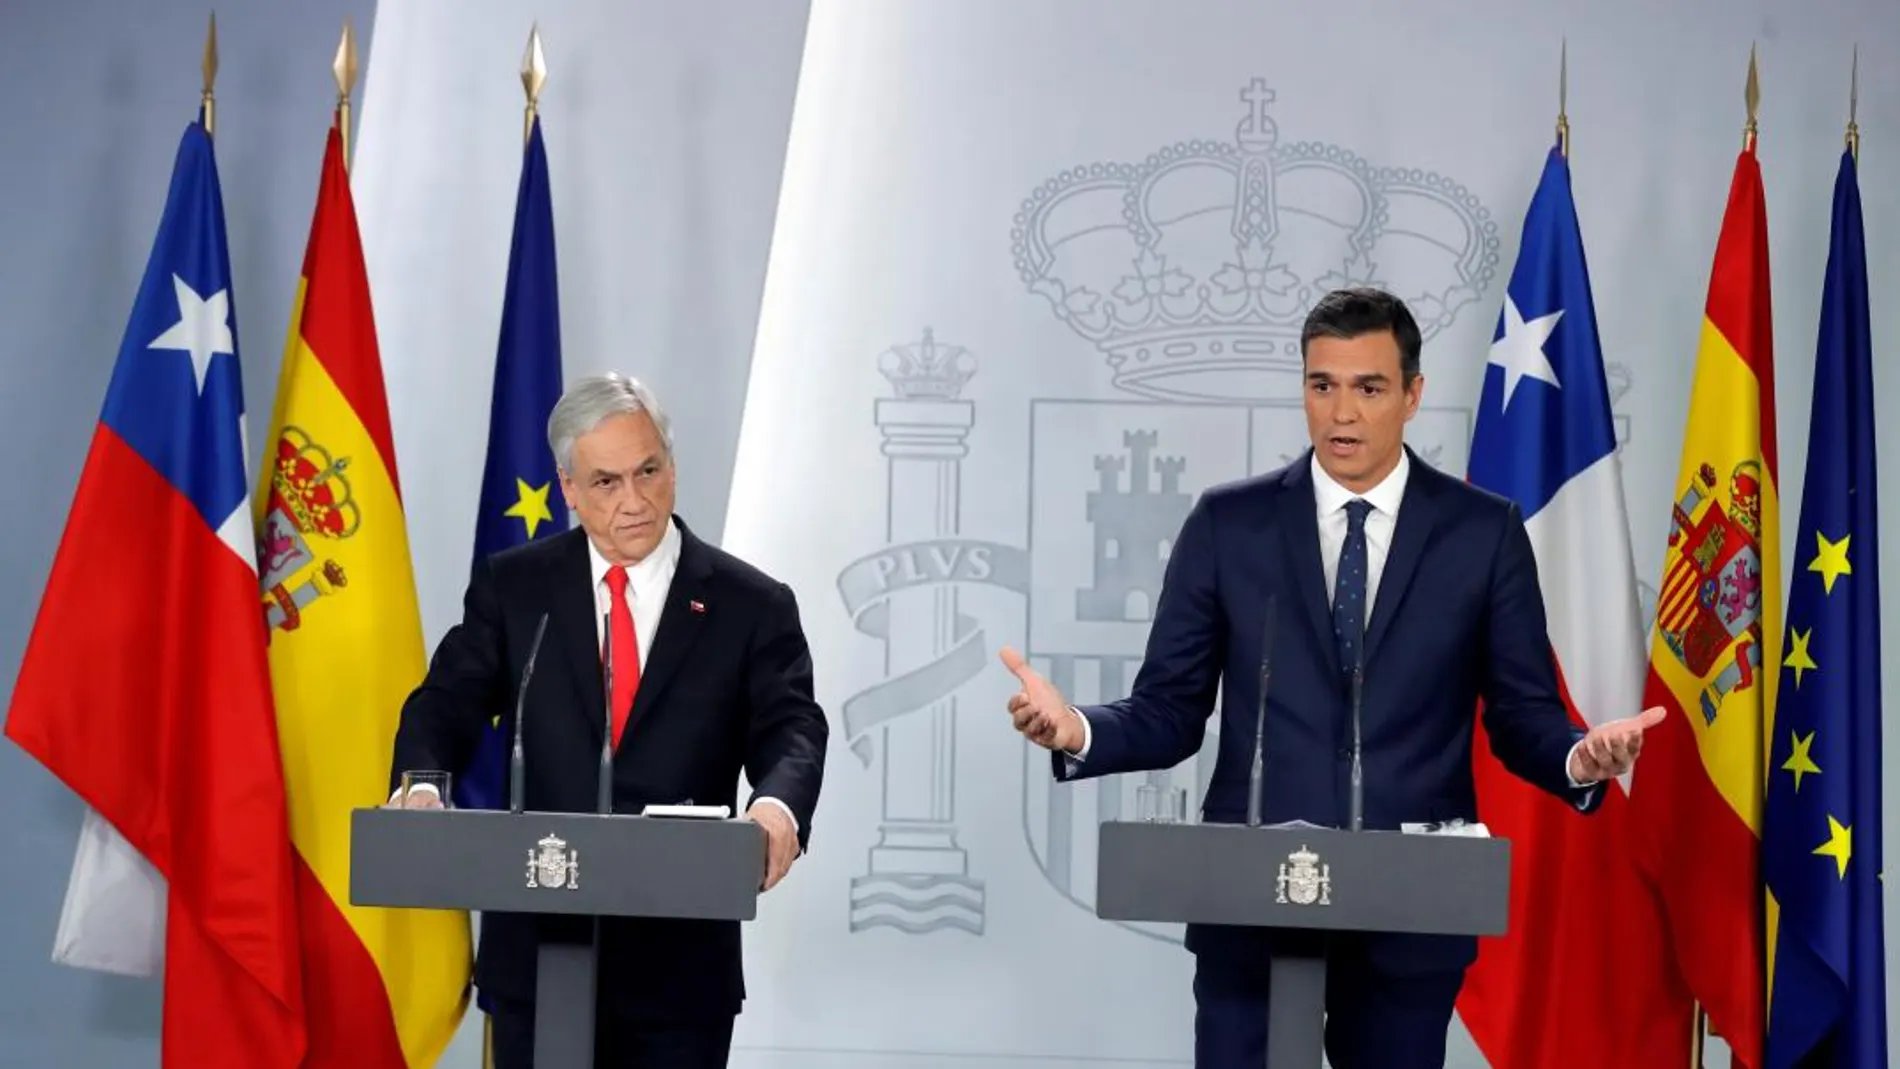 Pedro Sánchez y Sebastián Piñera durante la rueda de prensa posterior a su encuentro en el Palacio de la Moncloa. EFE/JuanJo Martín